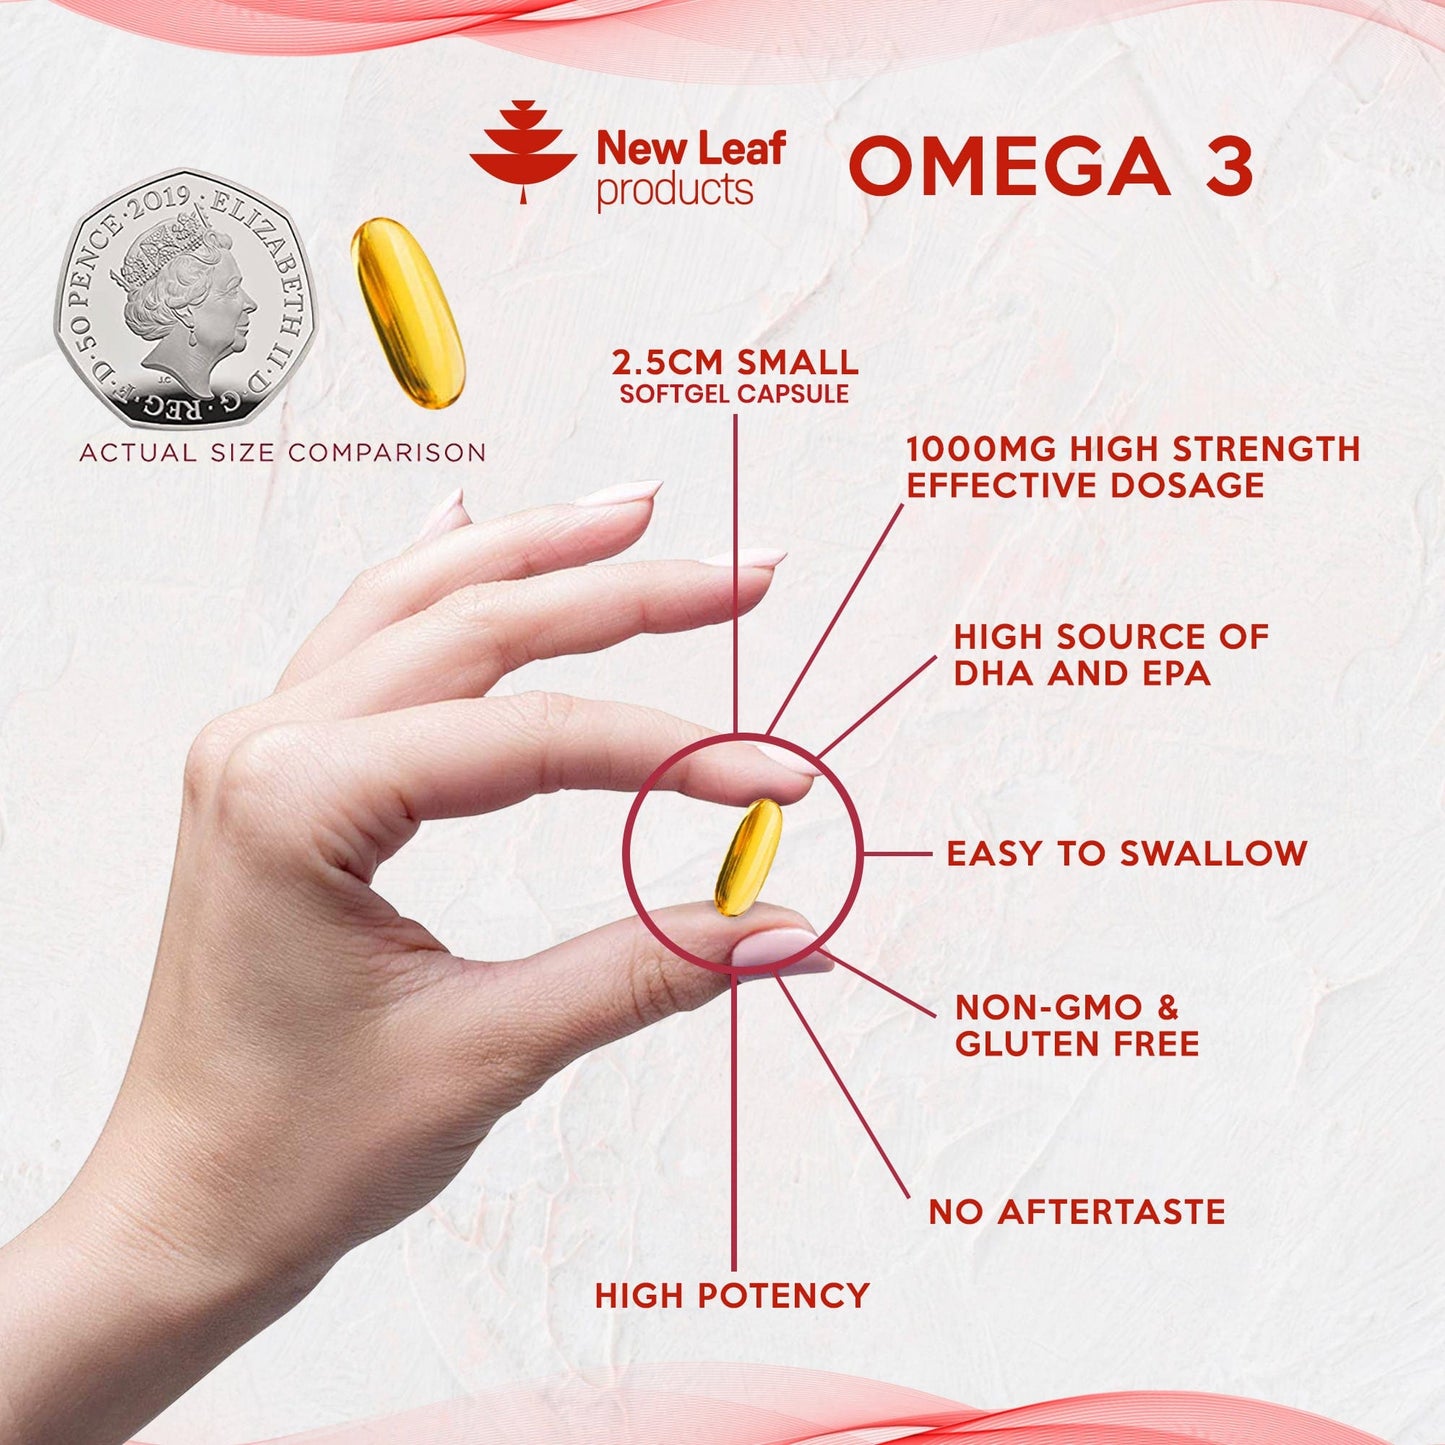 New Leaf OMEGA3 4 (1)